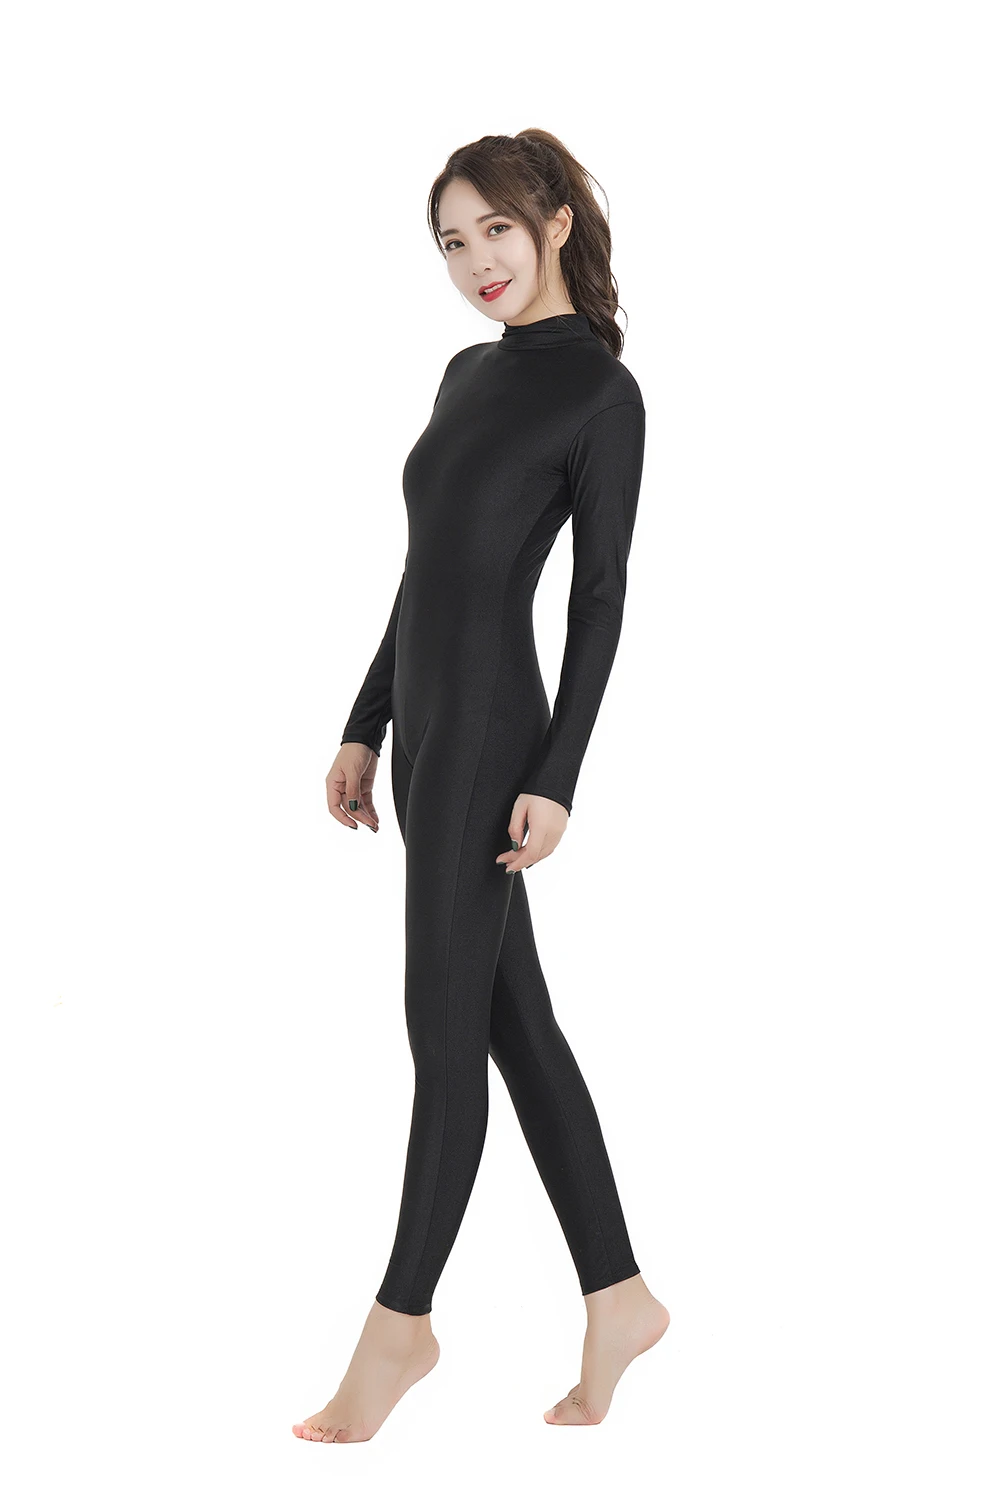 Черный гимнастический костюм SPEERISE для взрослых с длинным рукавом, спандекс, лайкра, облегающий гимнастический костюм, полная длина, женская одежда для балета